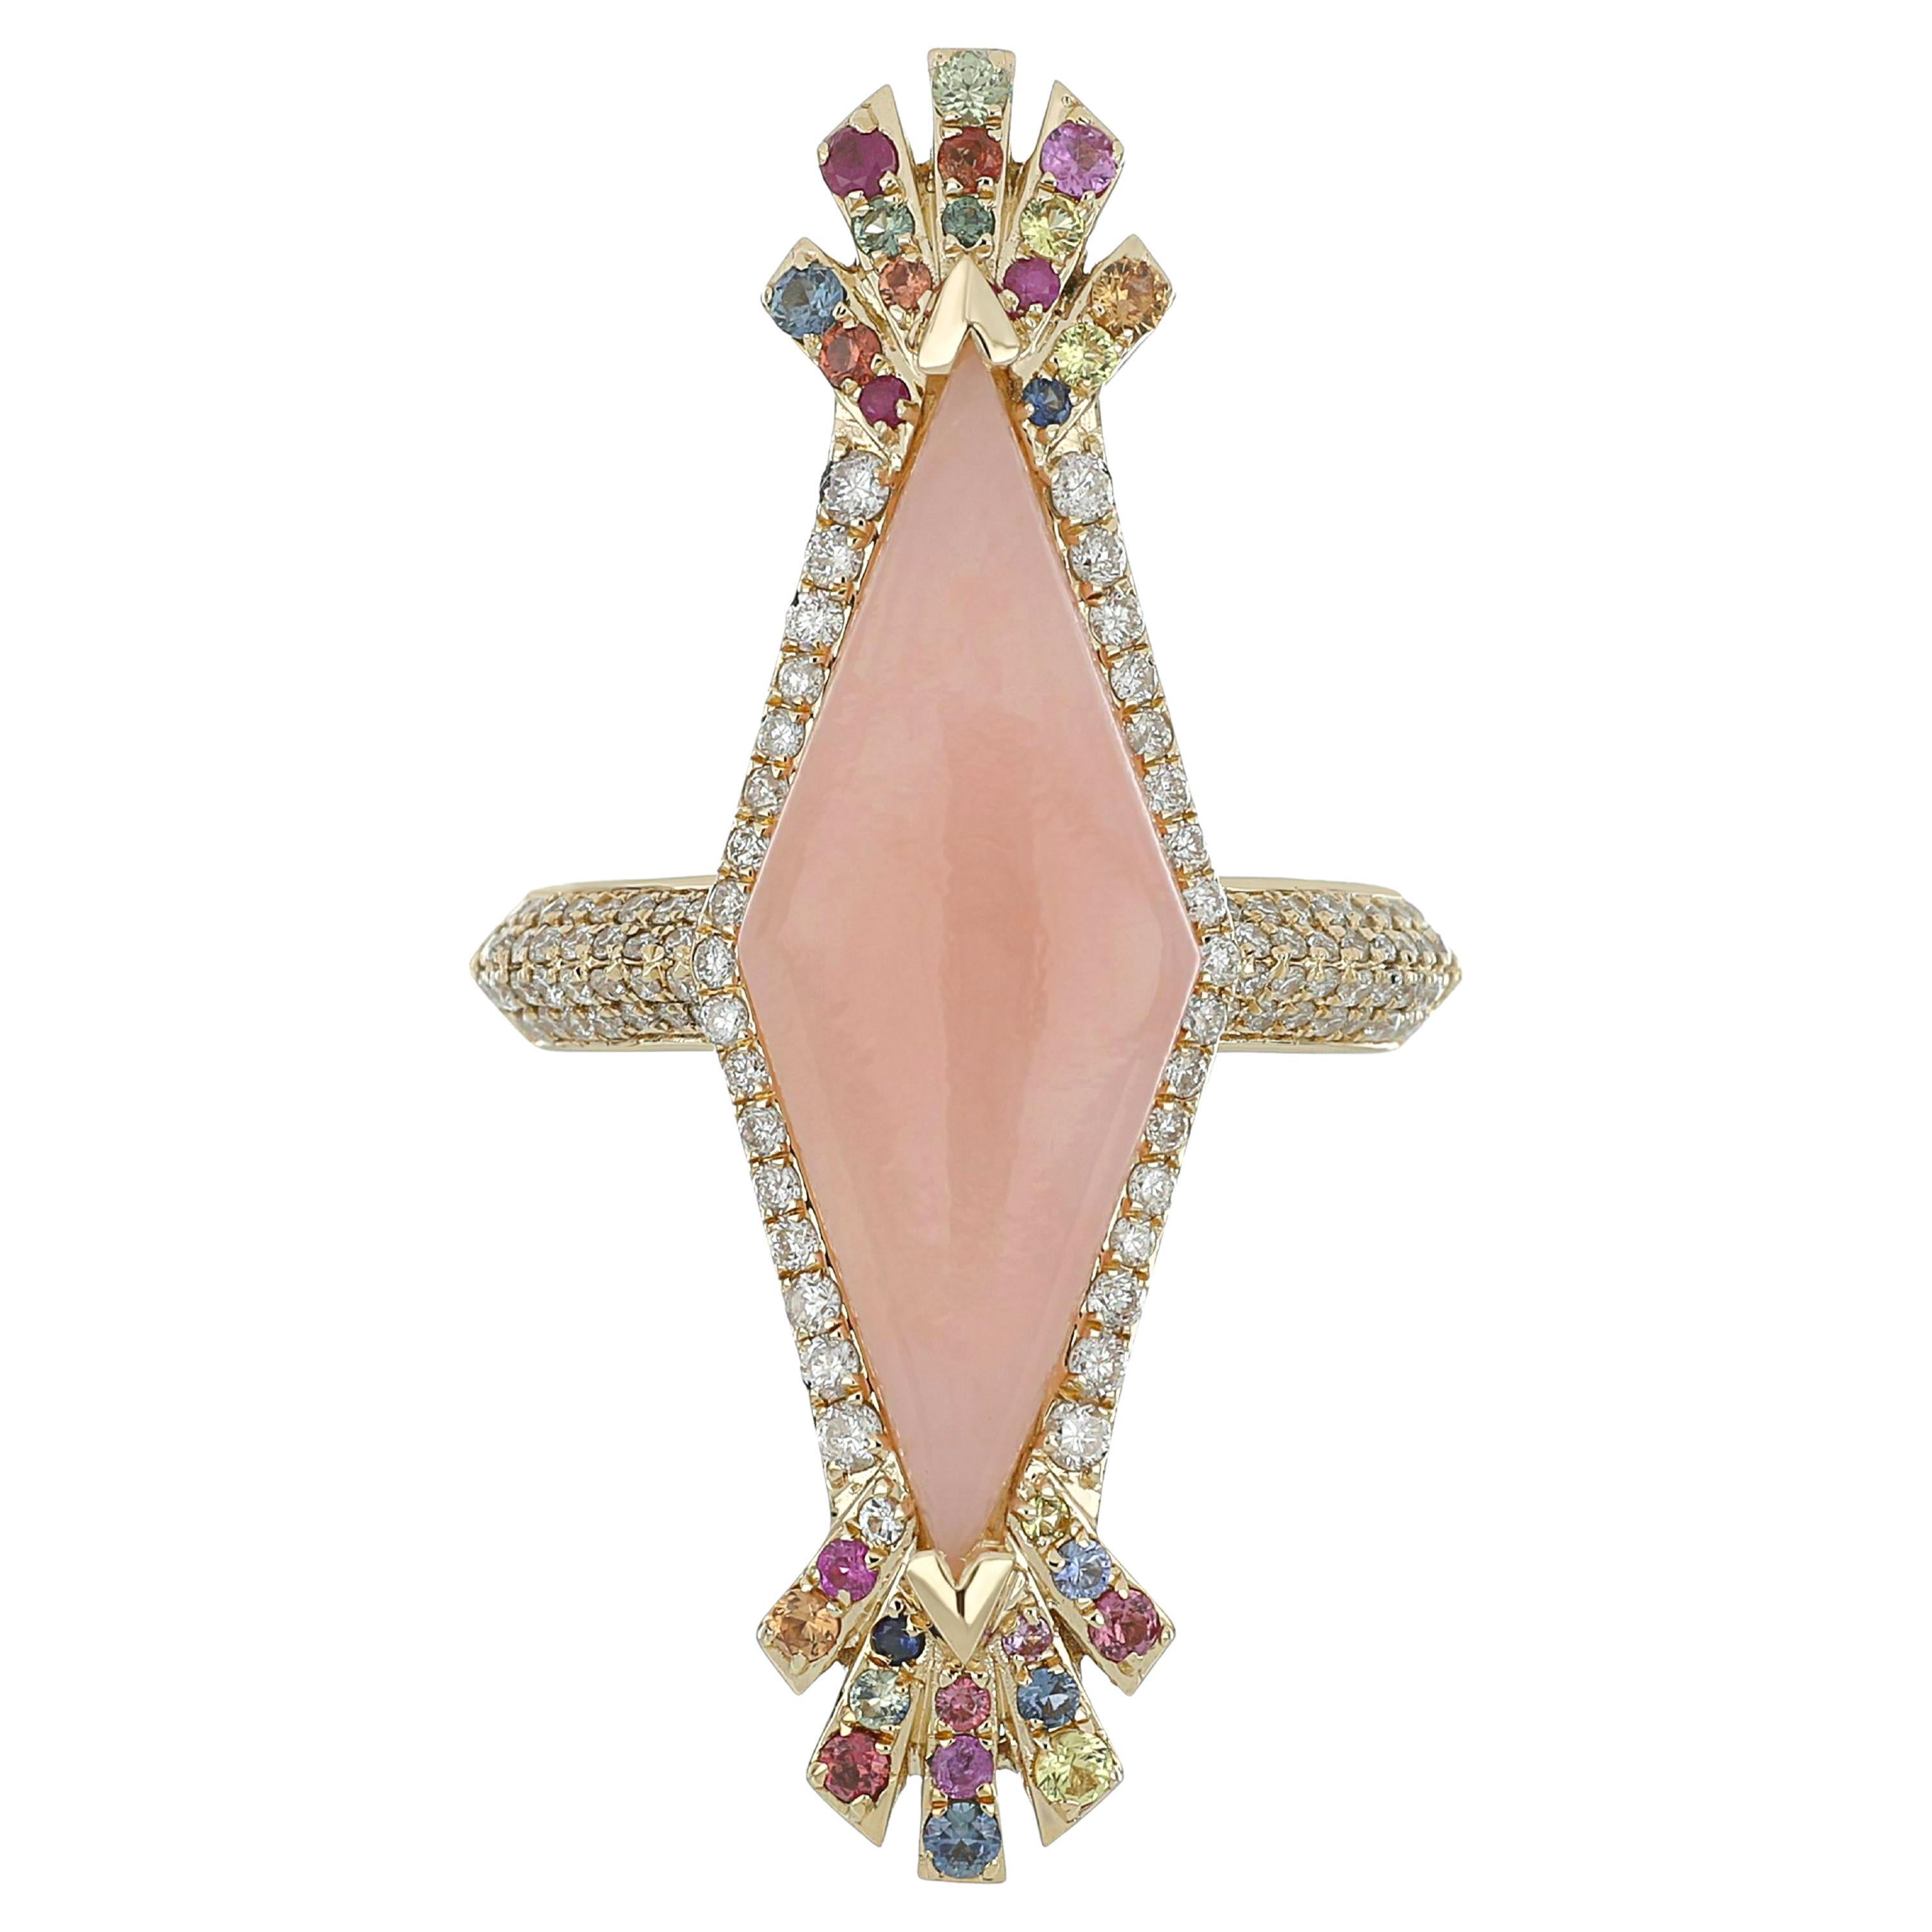 Nietenring aus 14 Karat Gelbgold mit rosa Opal, mehrfarbigem Saphir und Diamant